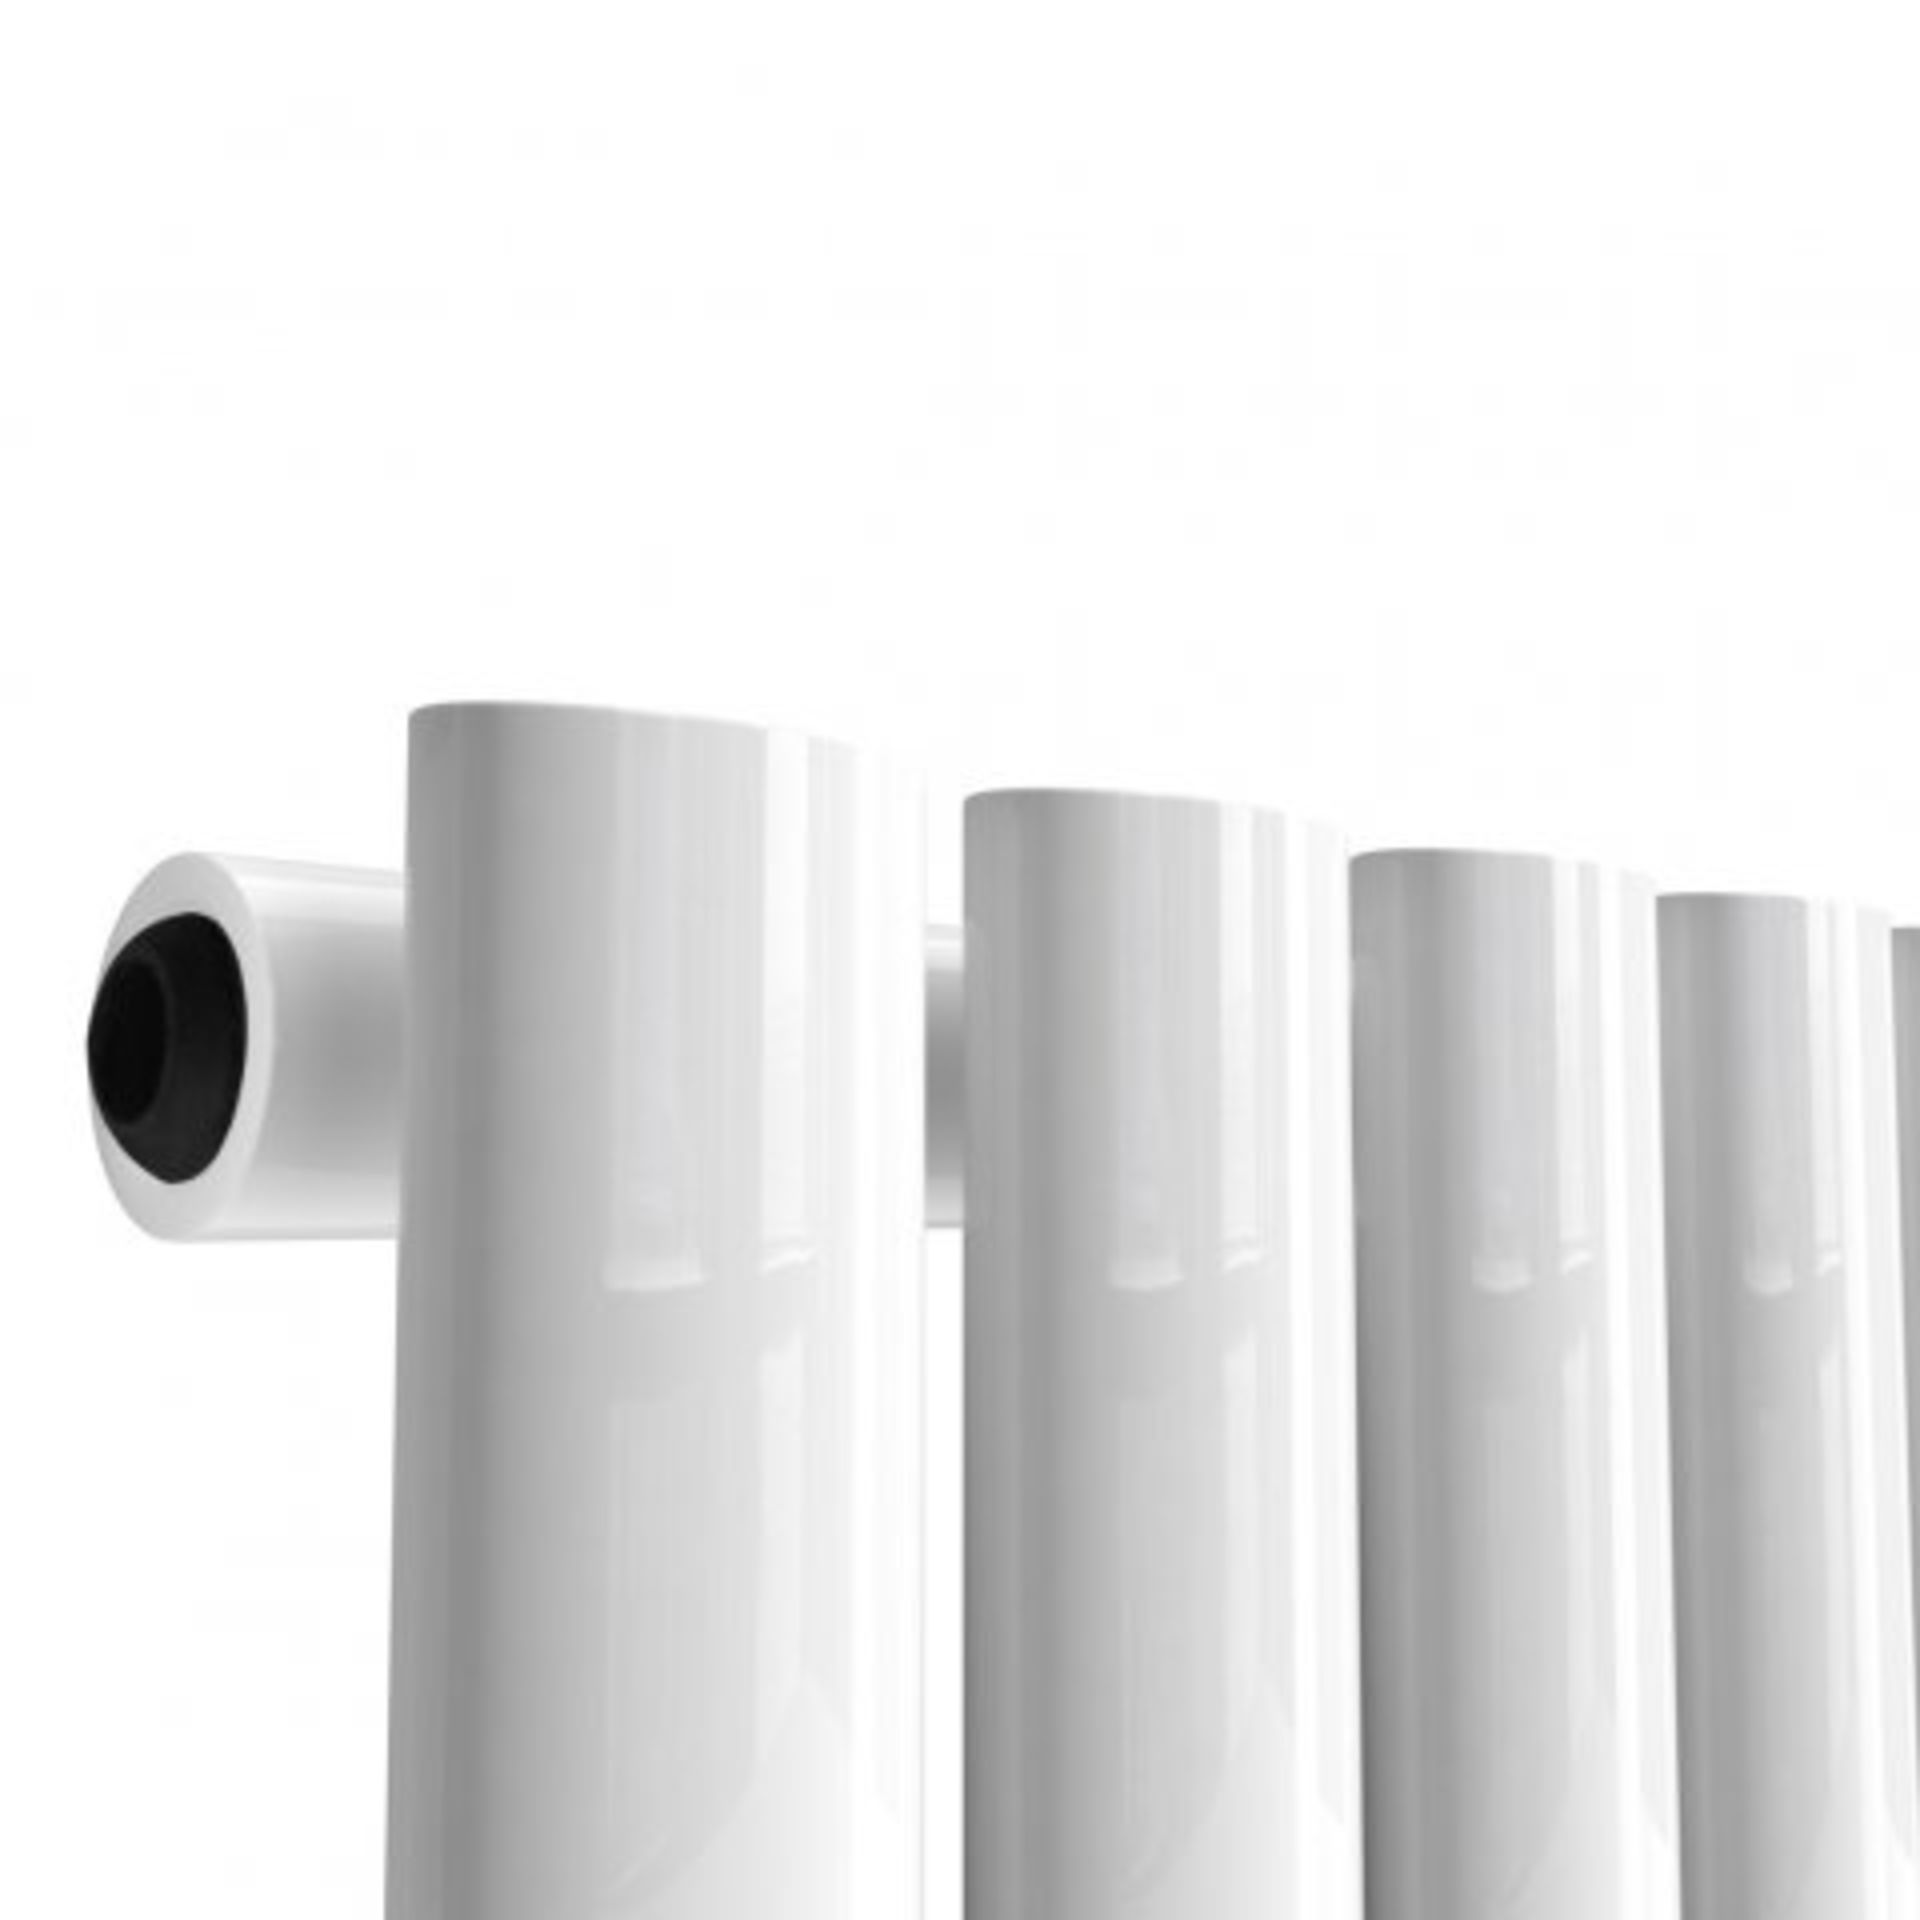 (I36) 1600x360mm Gloss White Single Oval Tube Vertical Radiator - Ember Premium. RRP £167.99. - Image 4 of 4